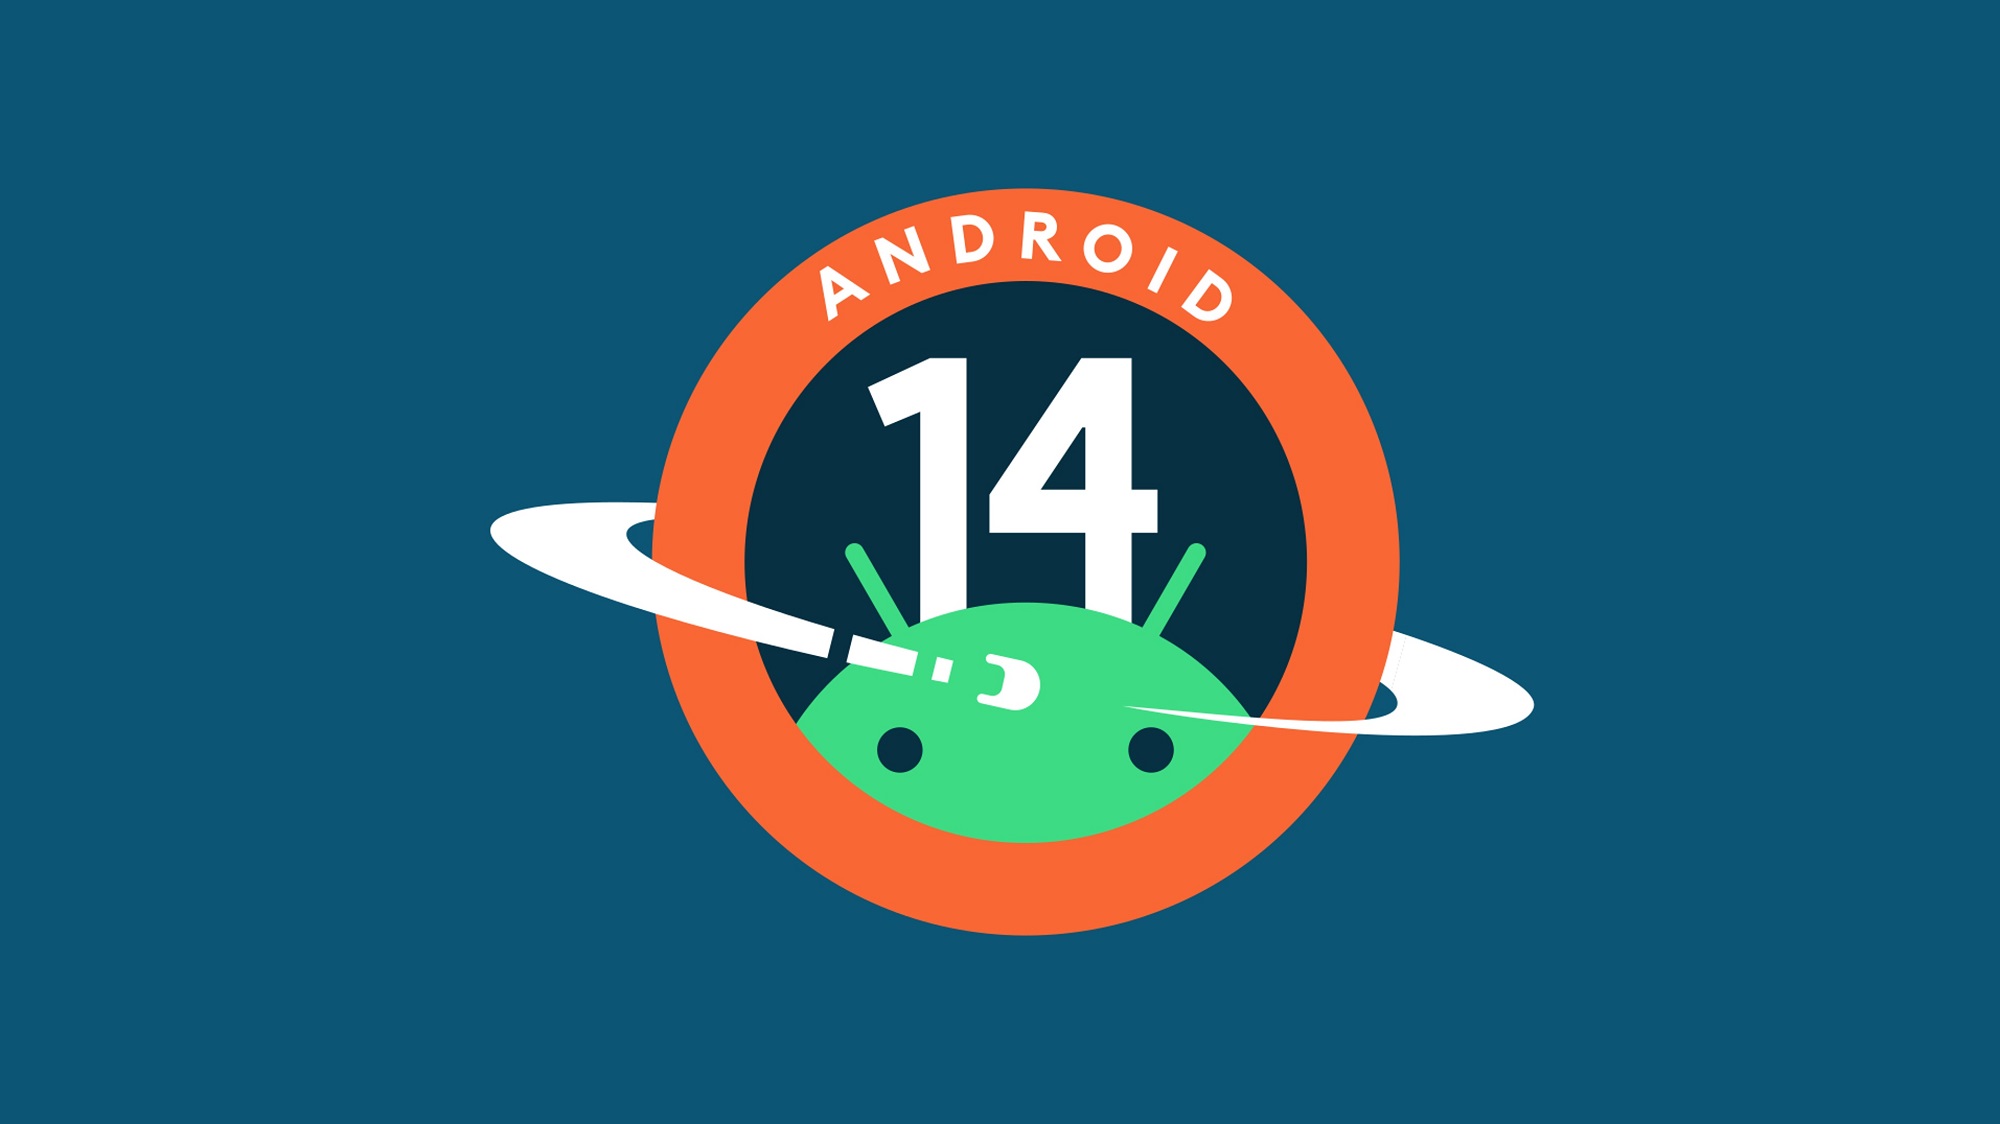 Google випустила Android 14 Beta 3: що нового